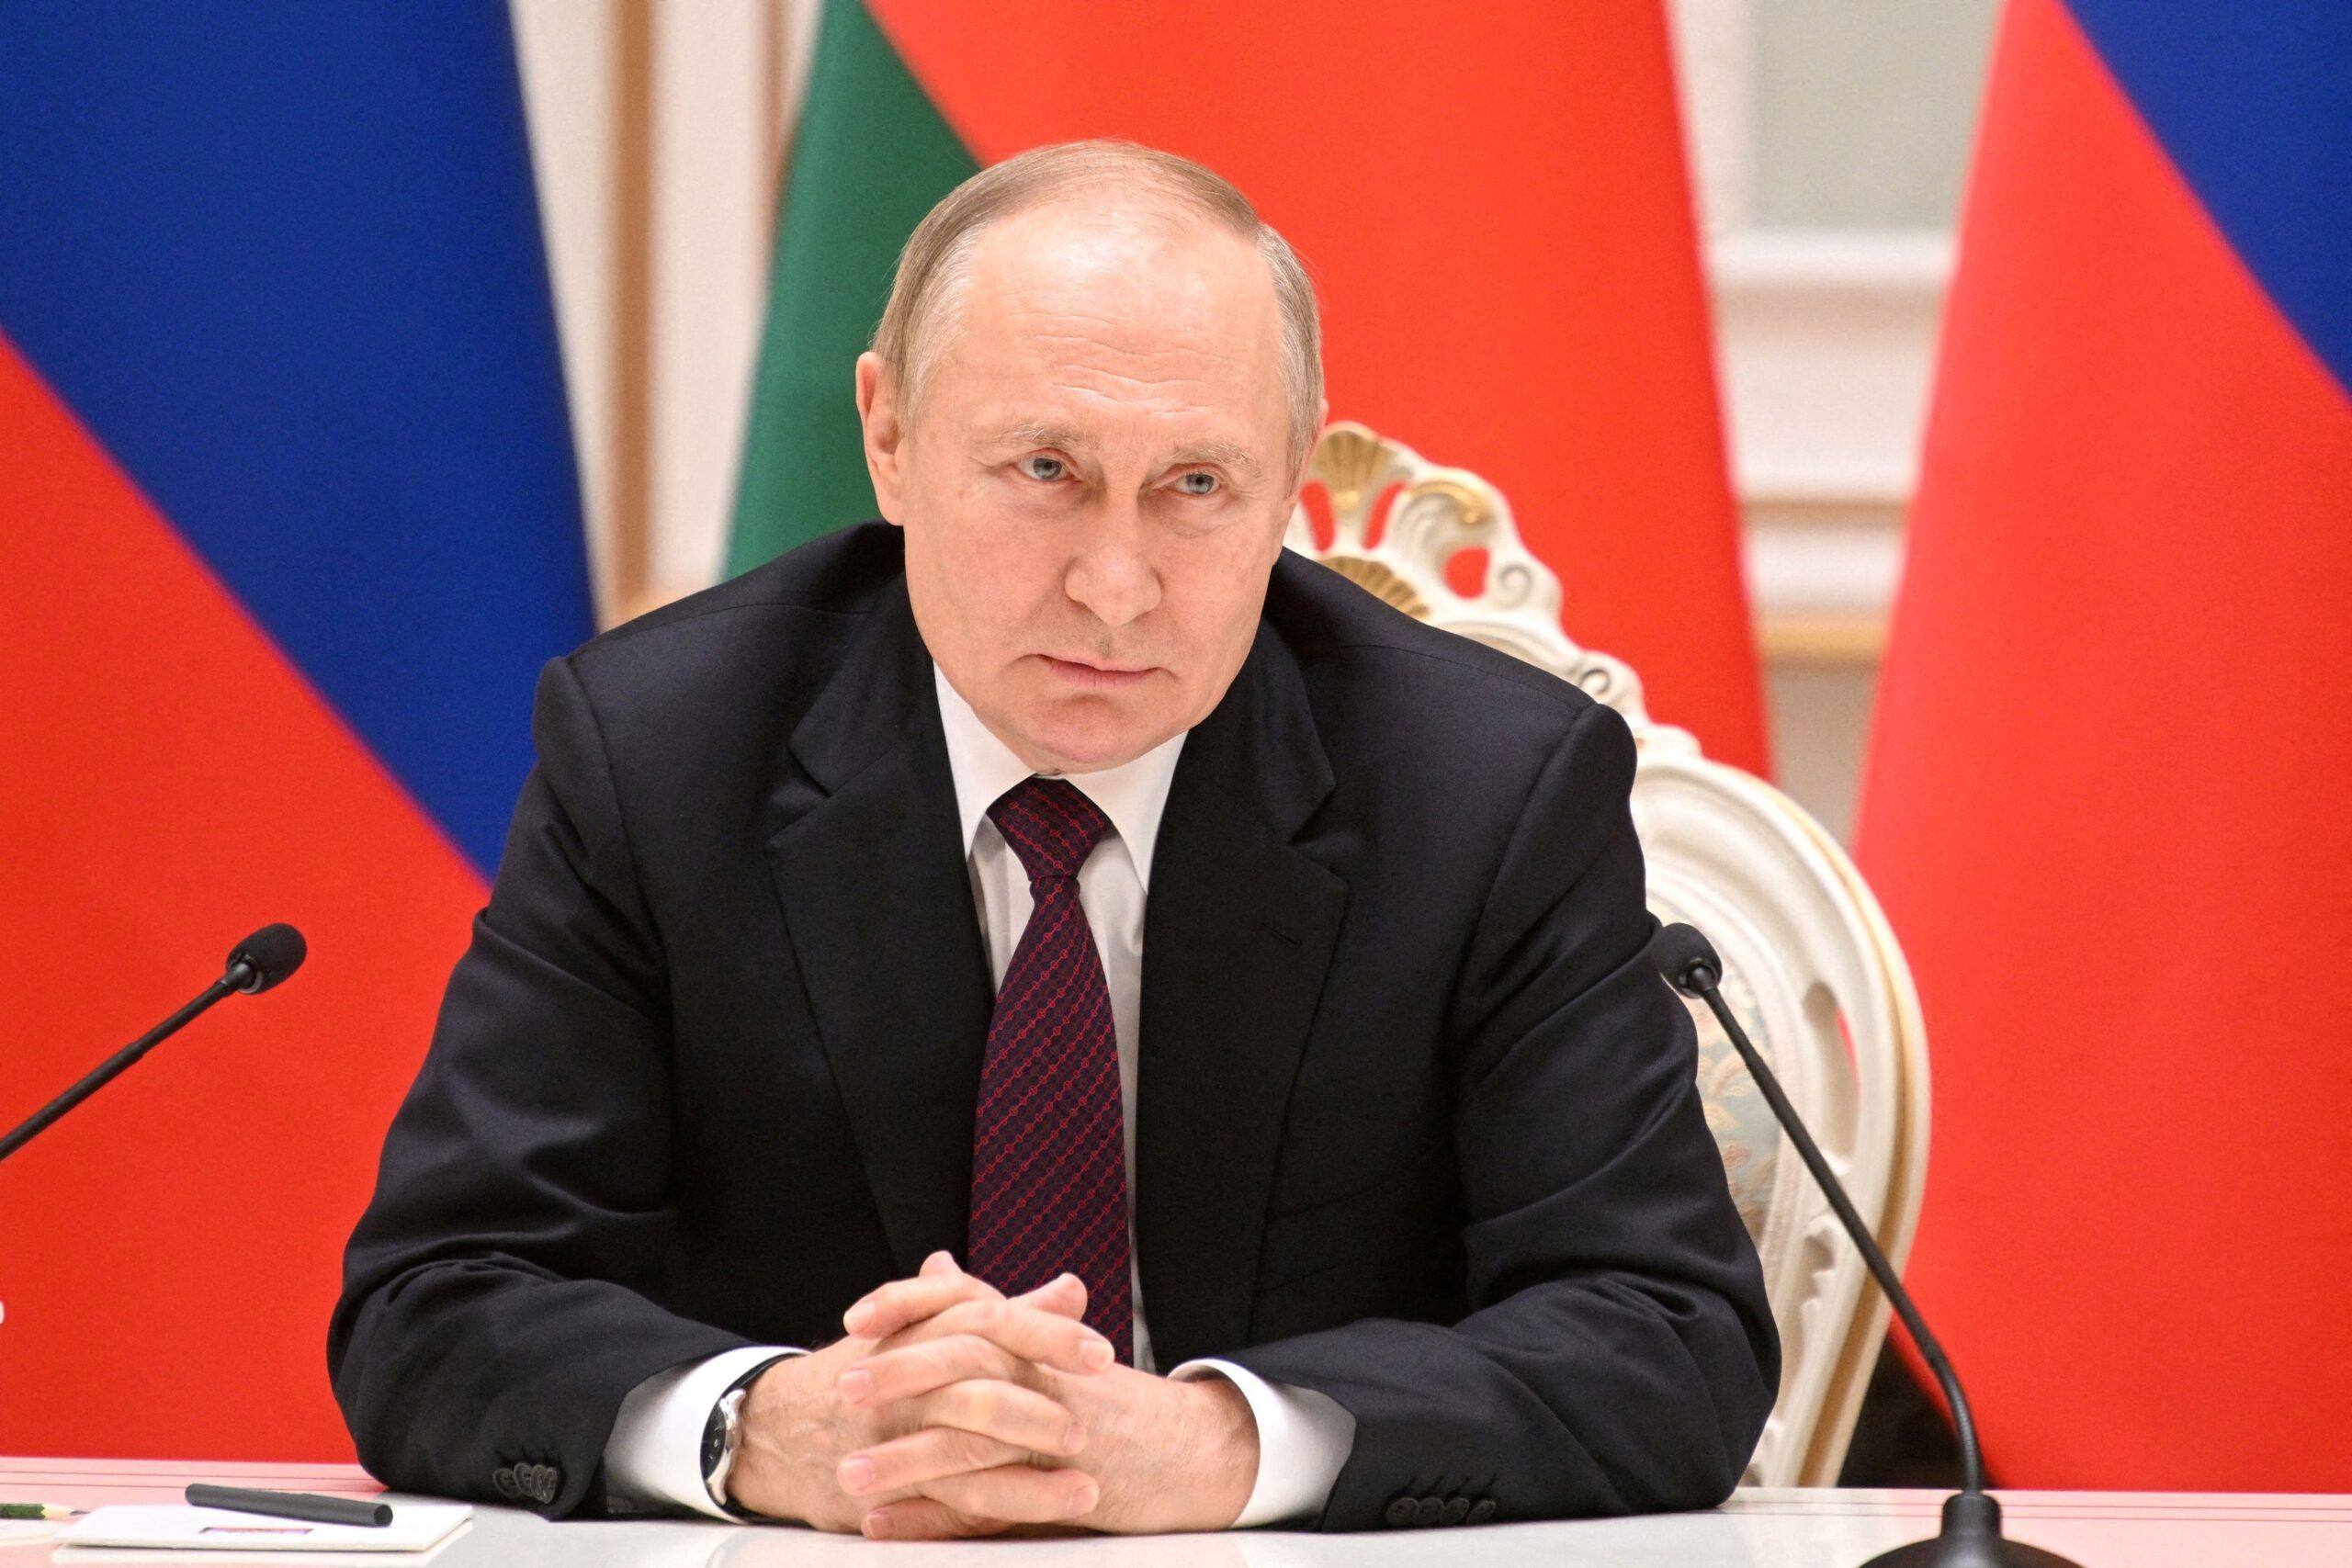 Ο Β.Πούτιν συγκαλεί εκτάκτως το Συμβούλιο Εθνικής Ασφάλειας μετά την επίθεση στο Μπριάνσκ